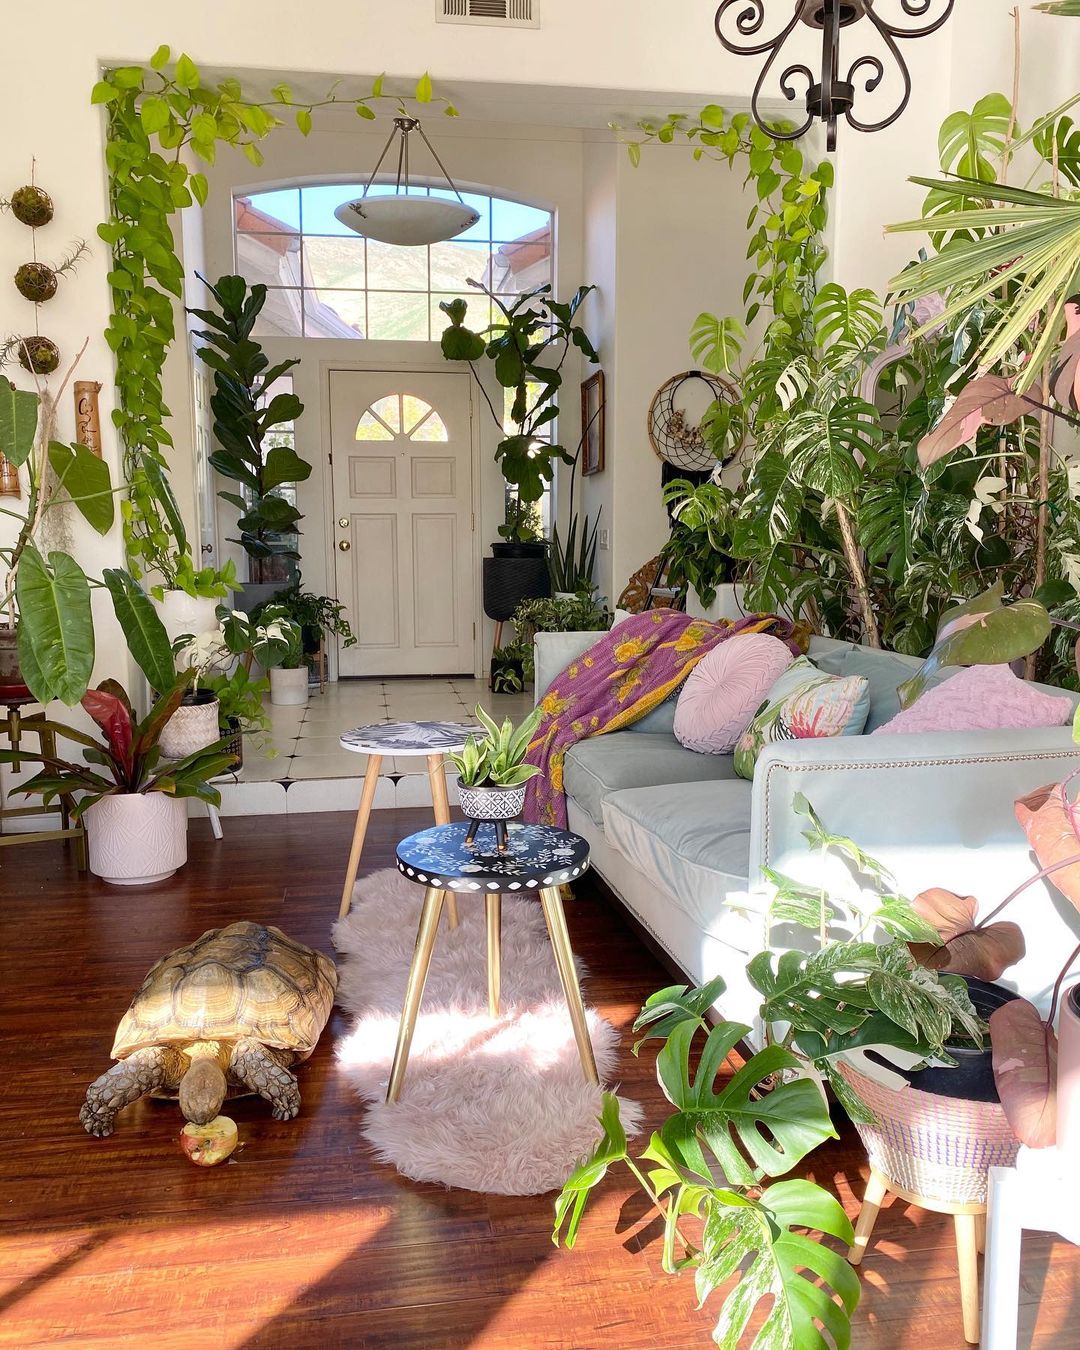 Living room with indoor plants. Photo by @plantsiren